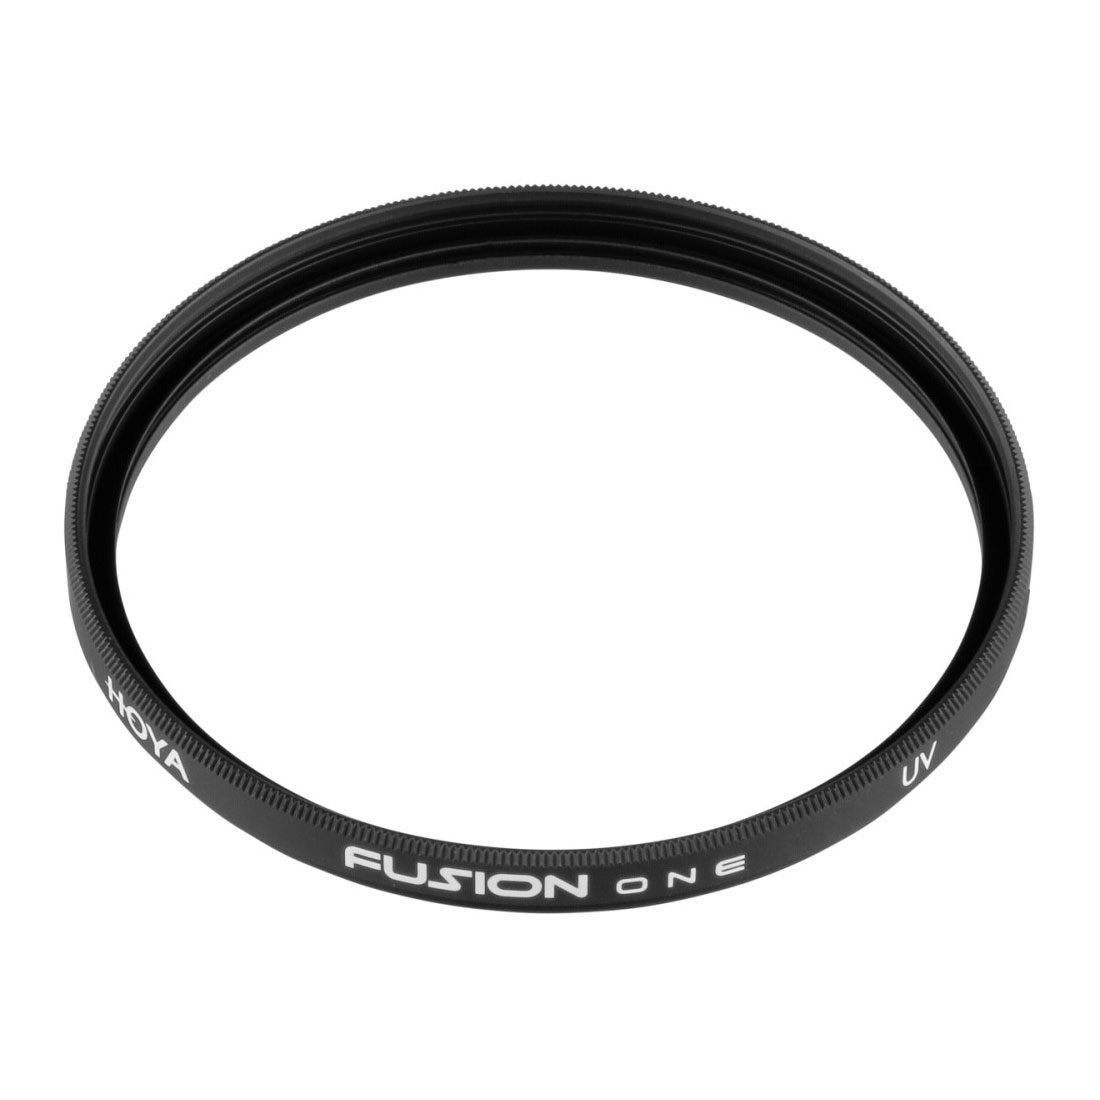 Hoya Fusion One UV filter 52mm